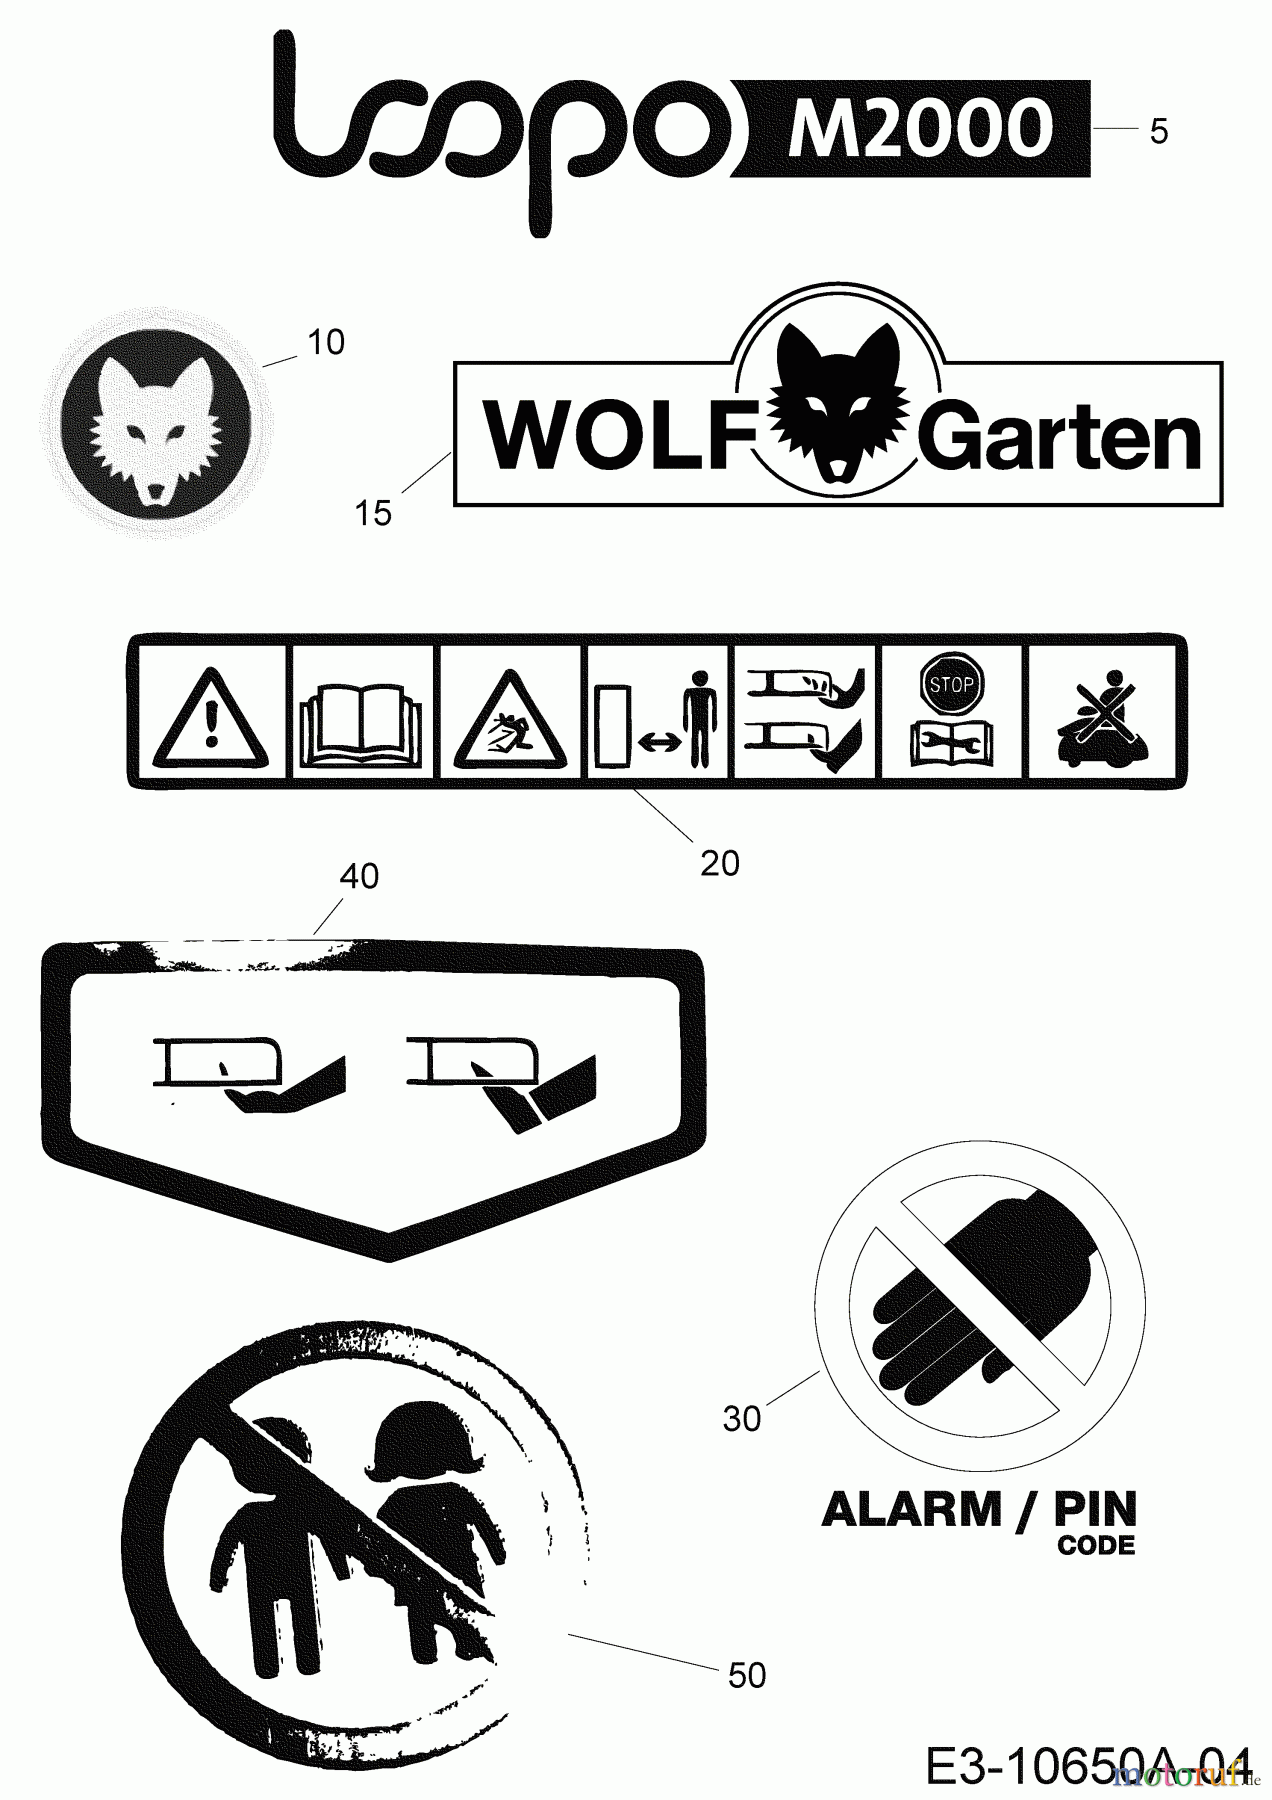  Wolf-Garten Mähroboter Loopo M2000 22BCFAEA650  (2019) Aufkleber